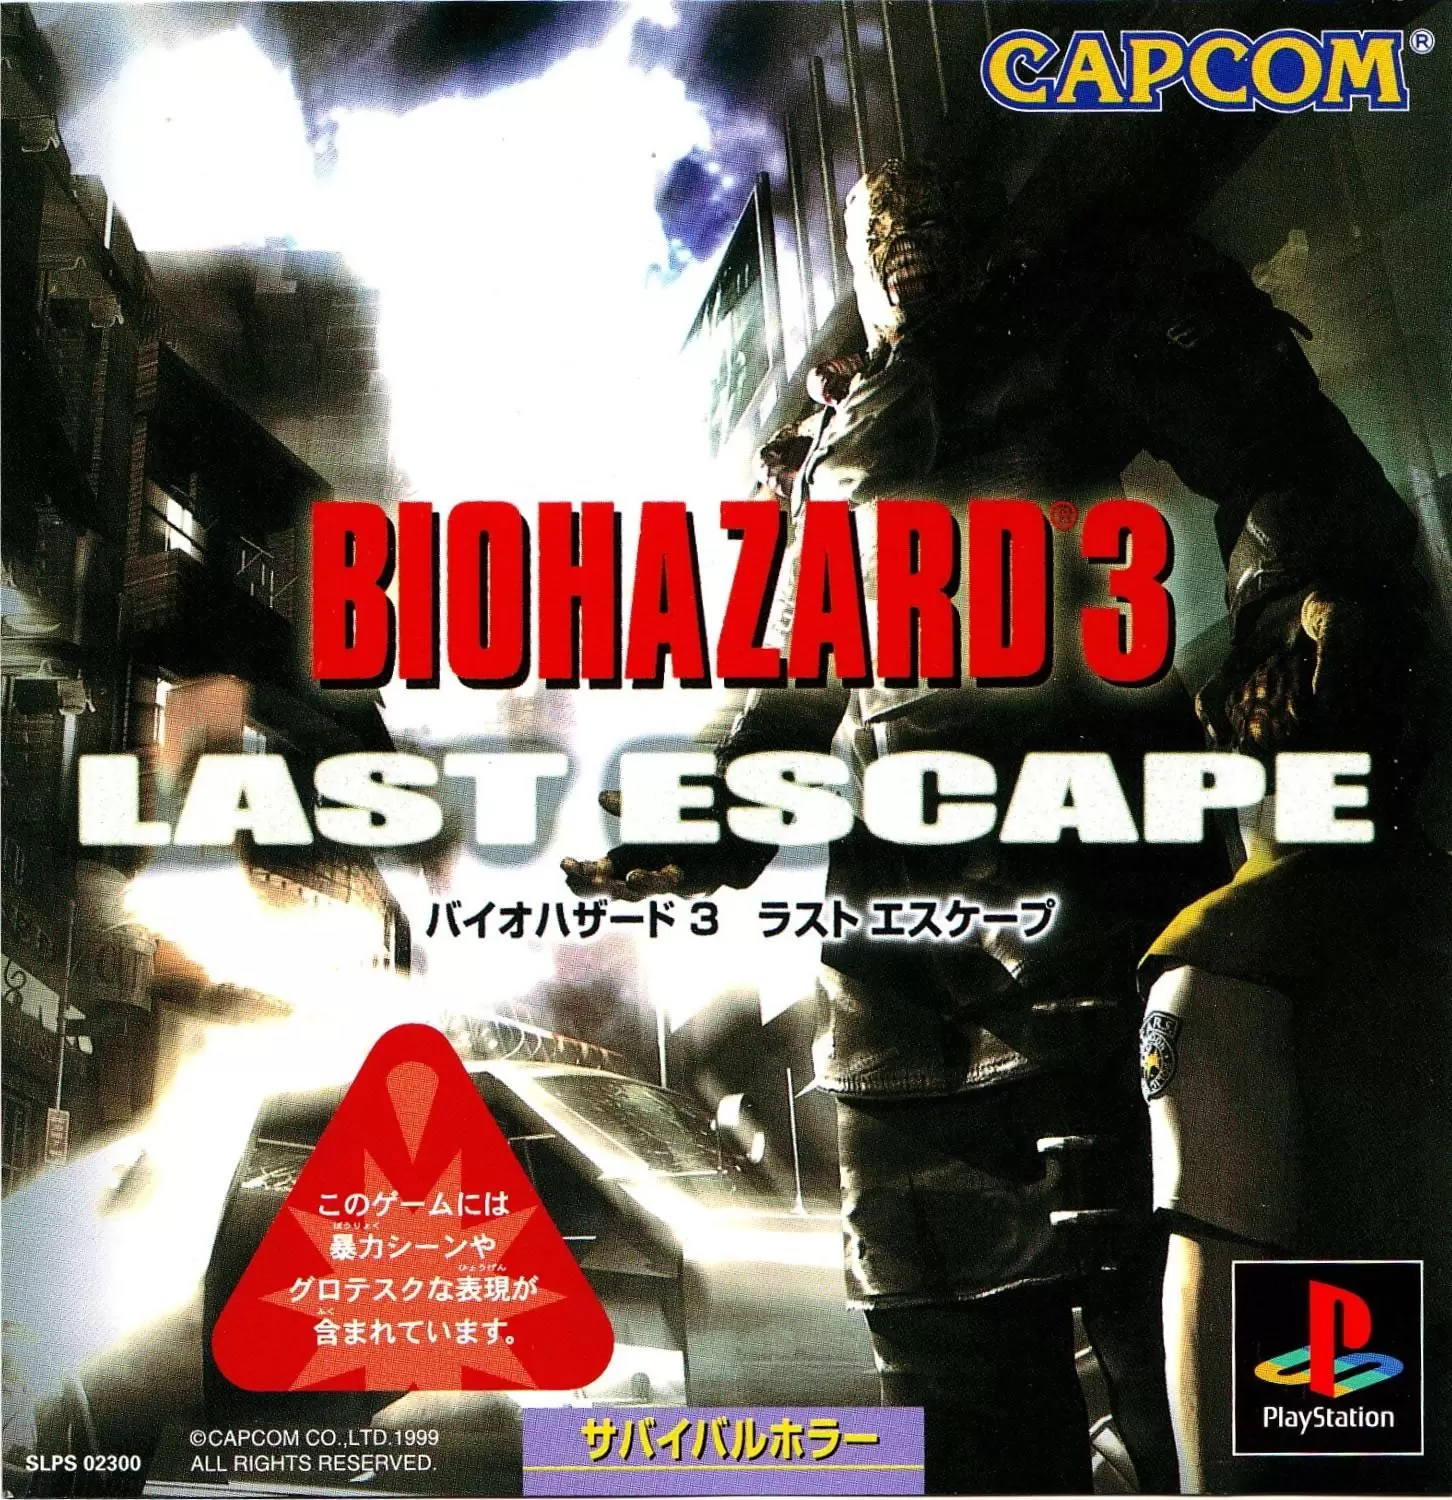 Playstation games - Biohazard 3 - Last Escape